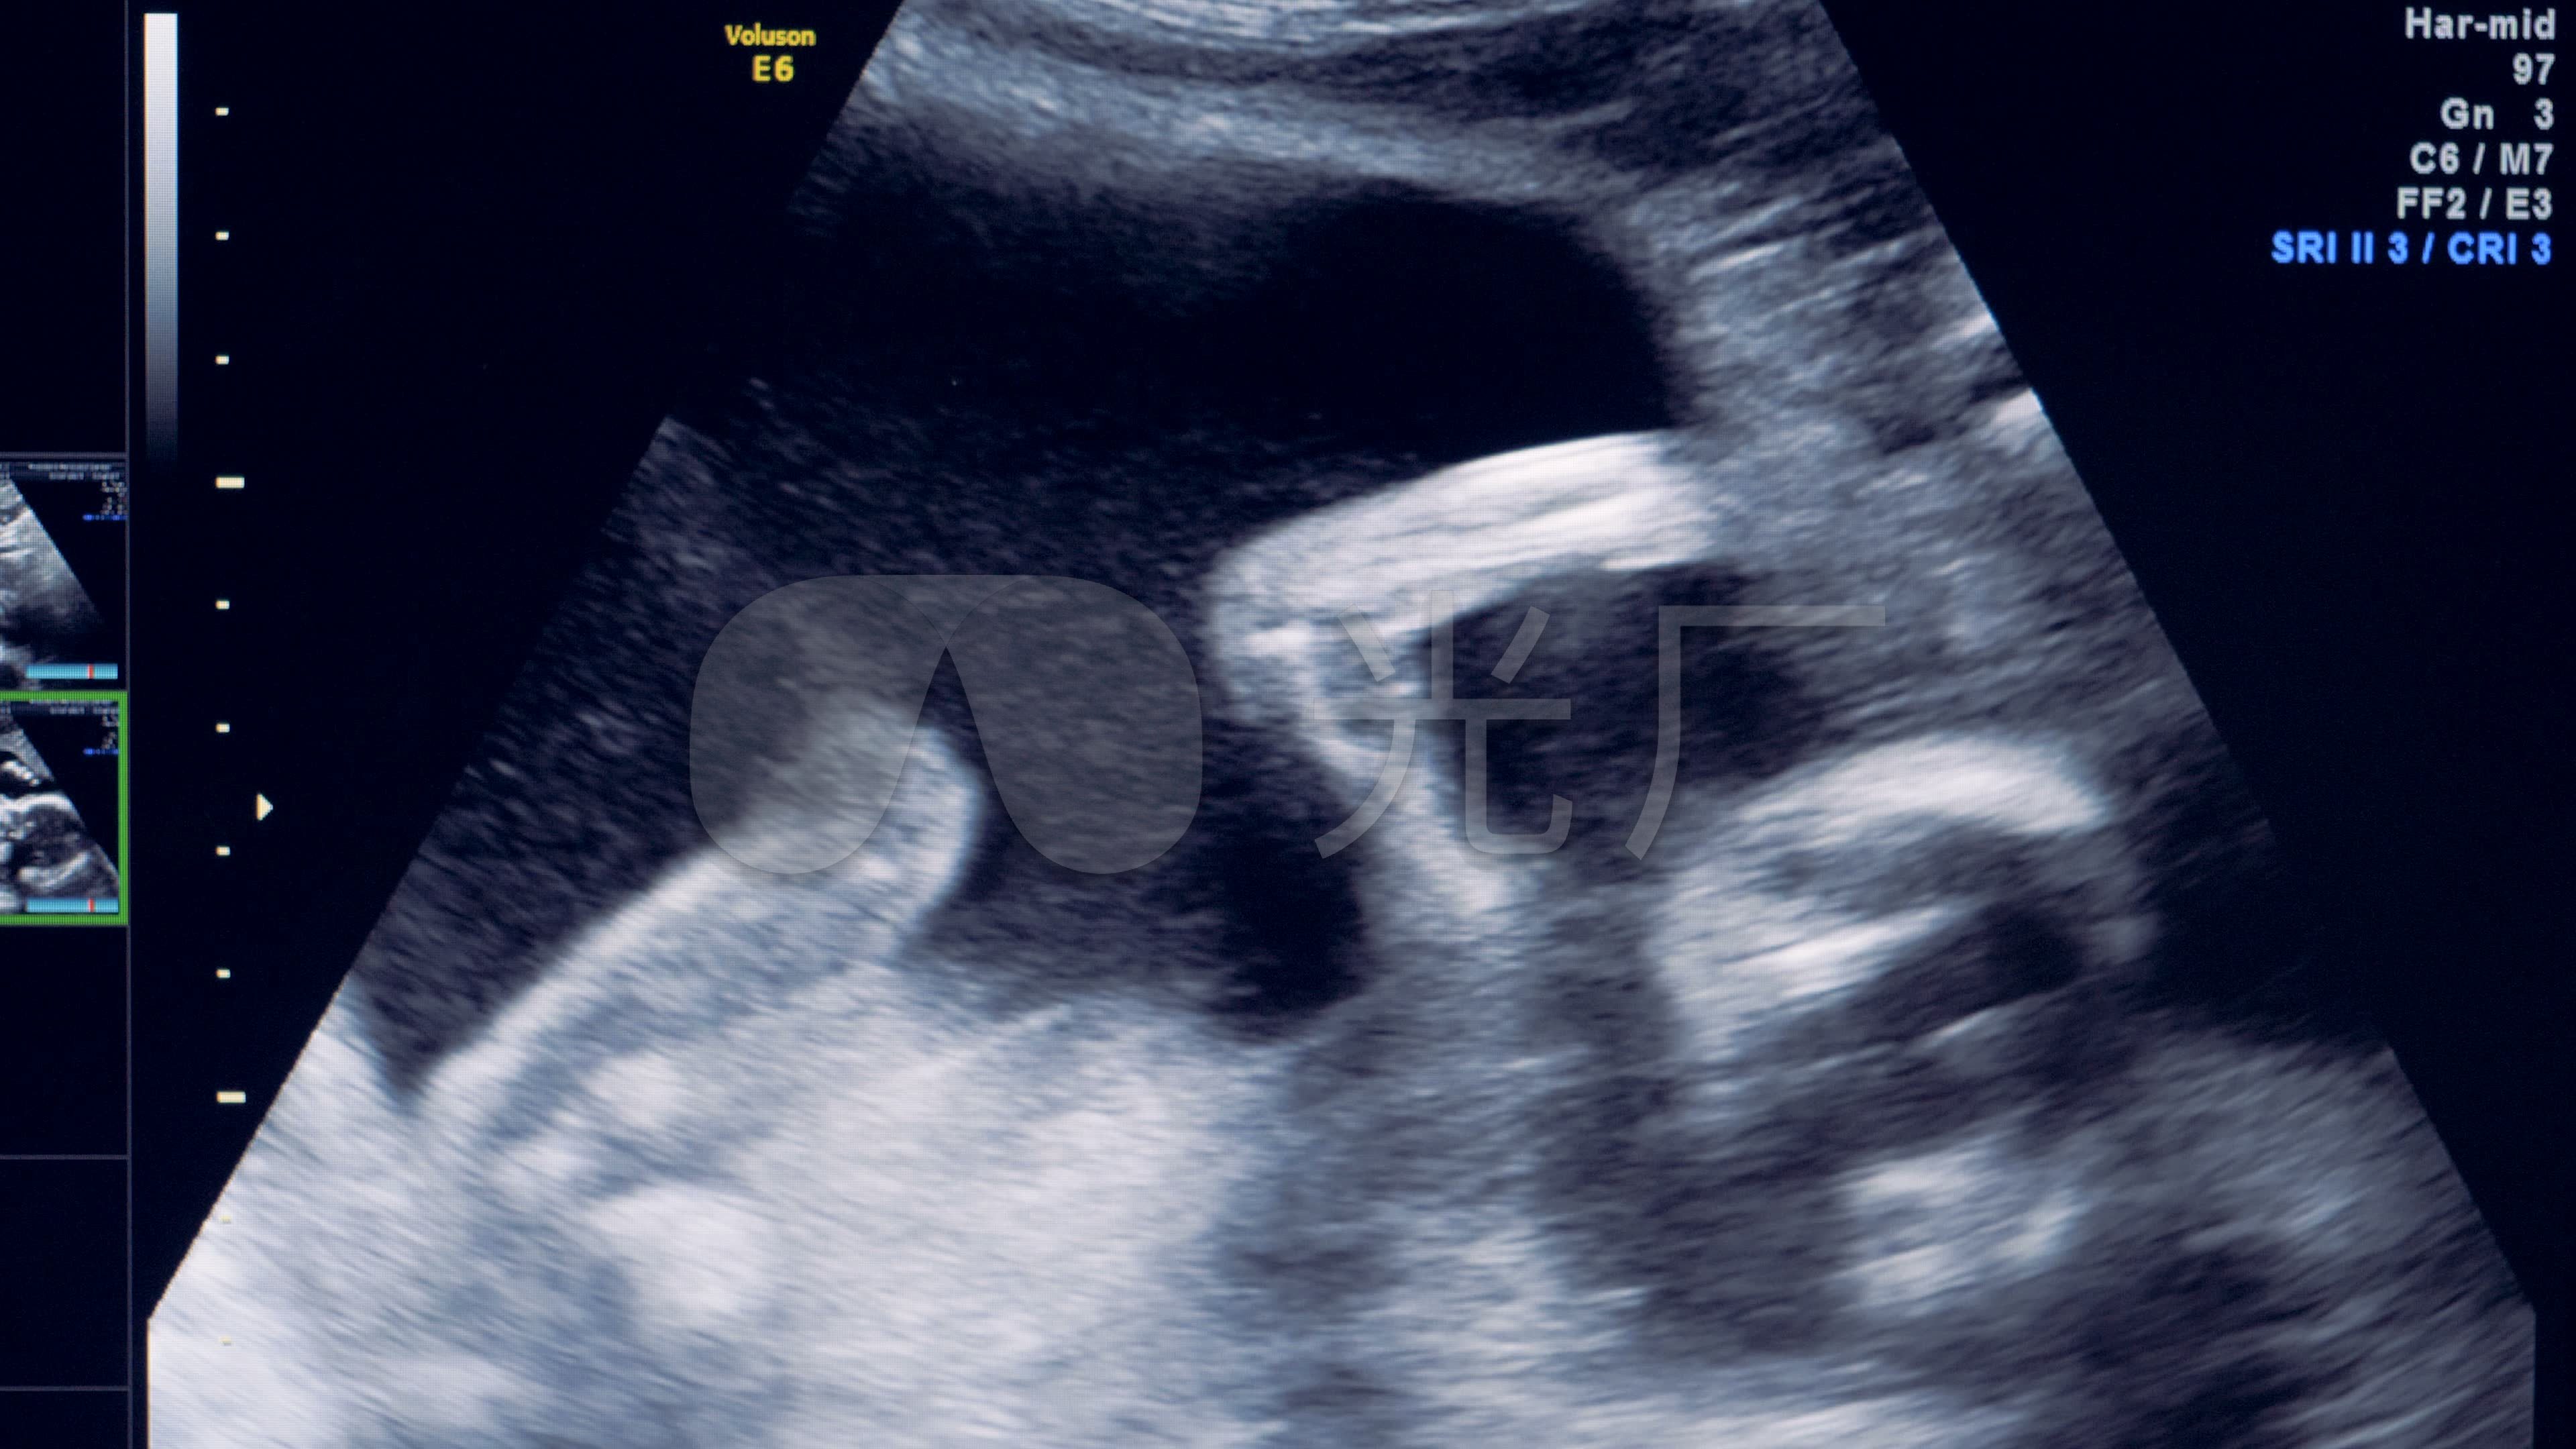 严重缺氧胎心监护图解（孕后期做胎心监护，如何看宝宝是否缺氧？有些知识孕妈该懂） | 说明书网